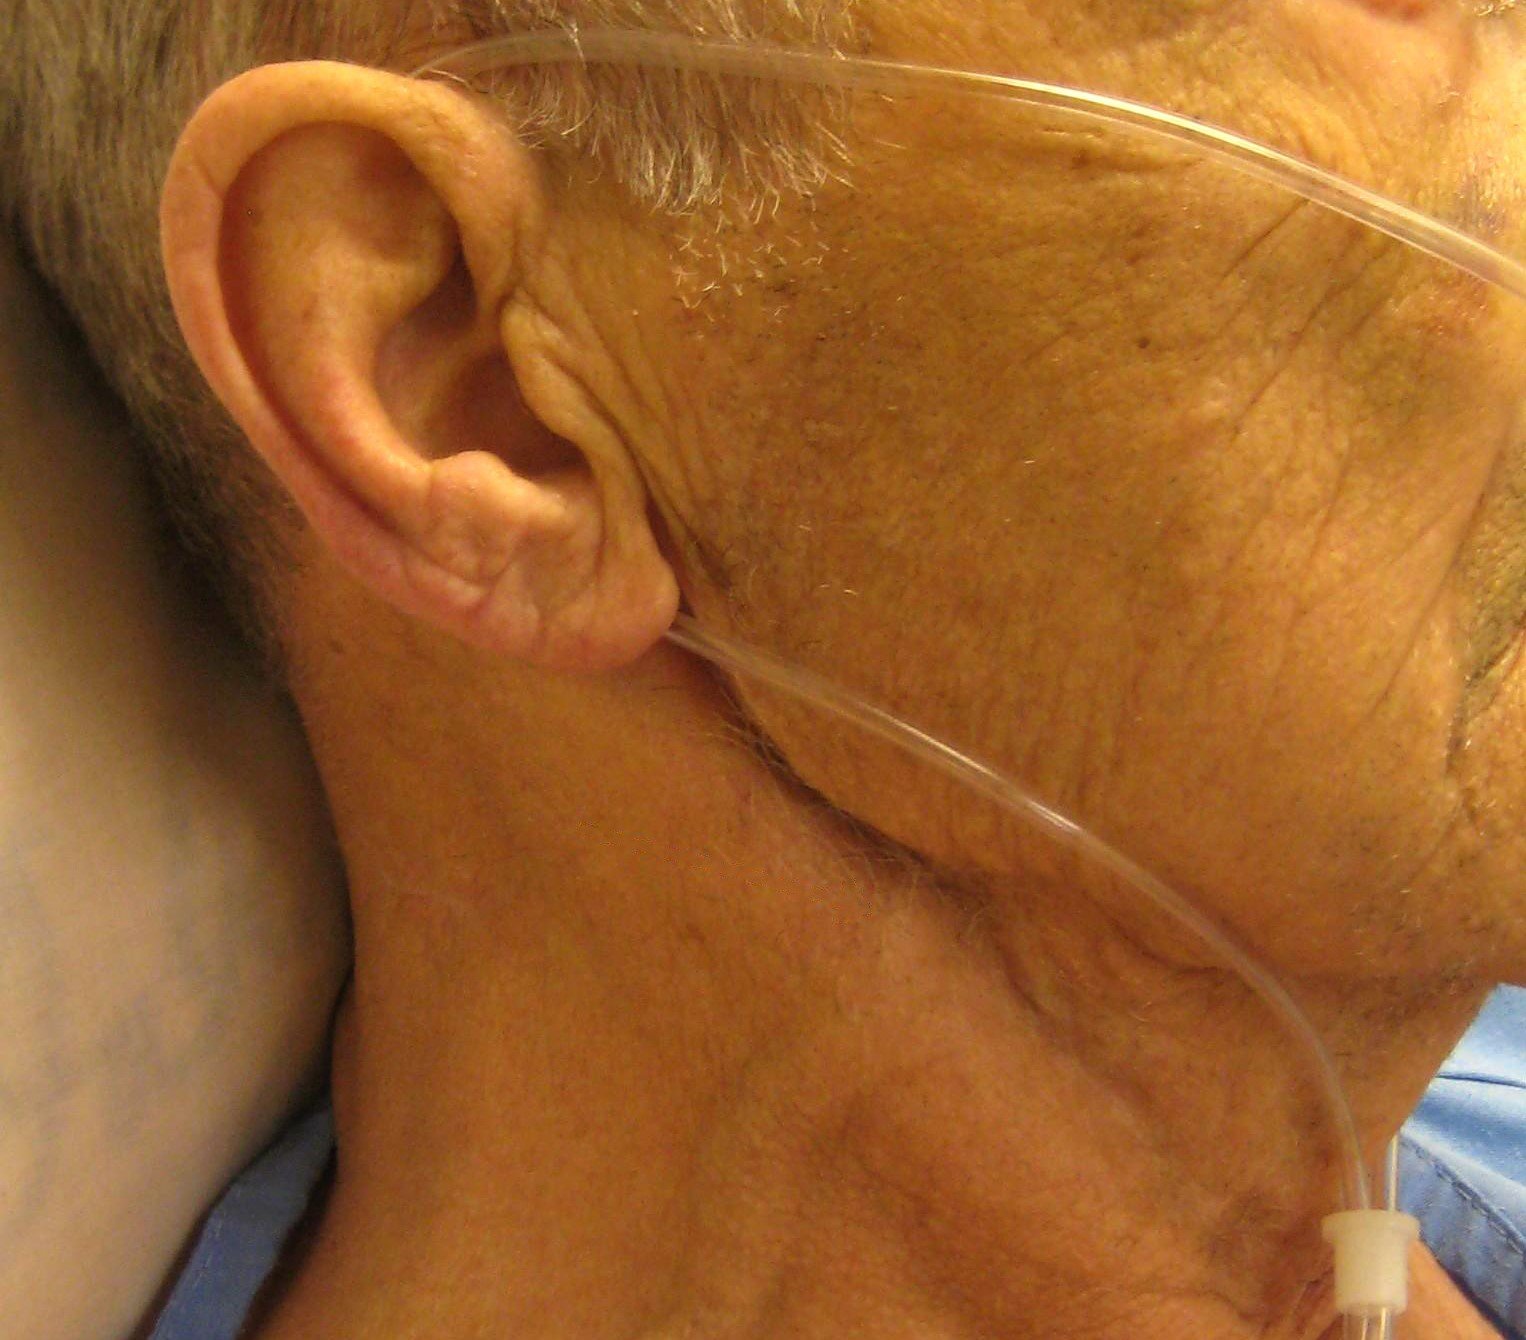 Cannula tube around a man's ear.